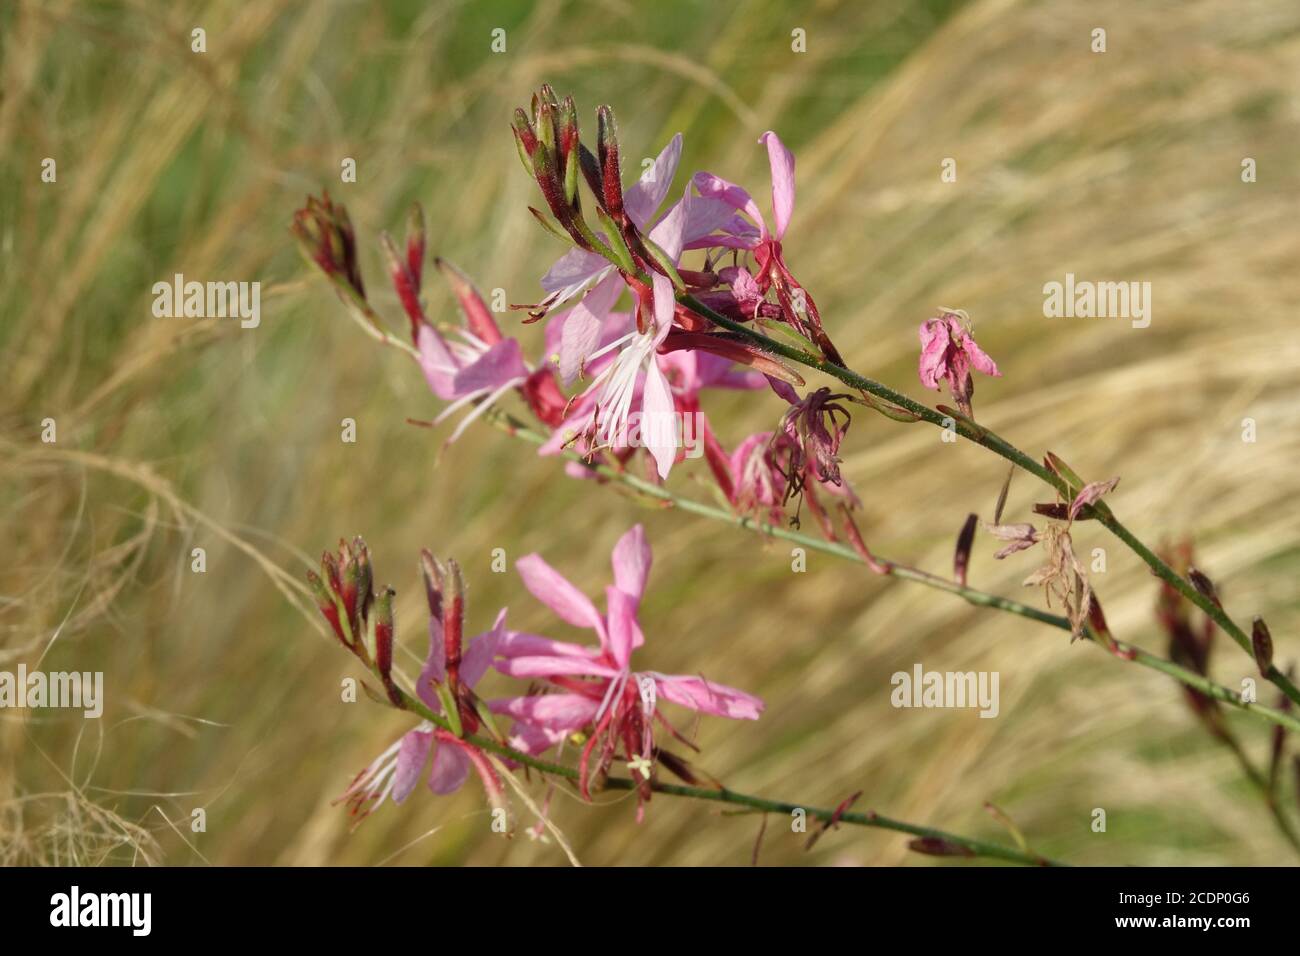 August Gartenblumen rosa gaura blühenden, Hintergrund Ziergras Stipa Stockfoto